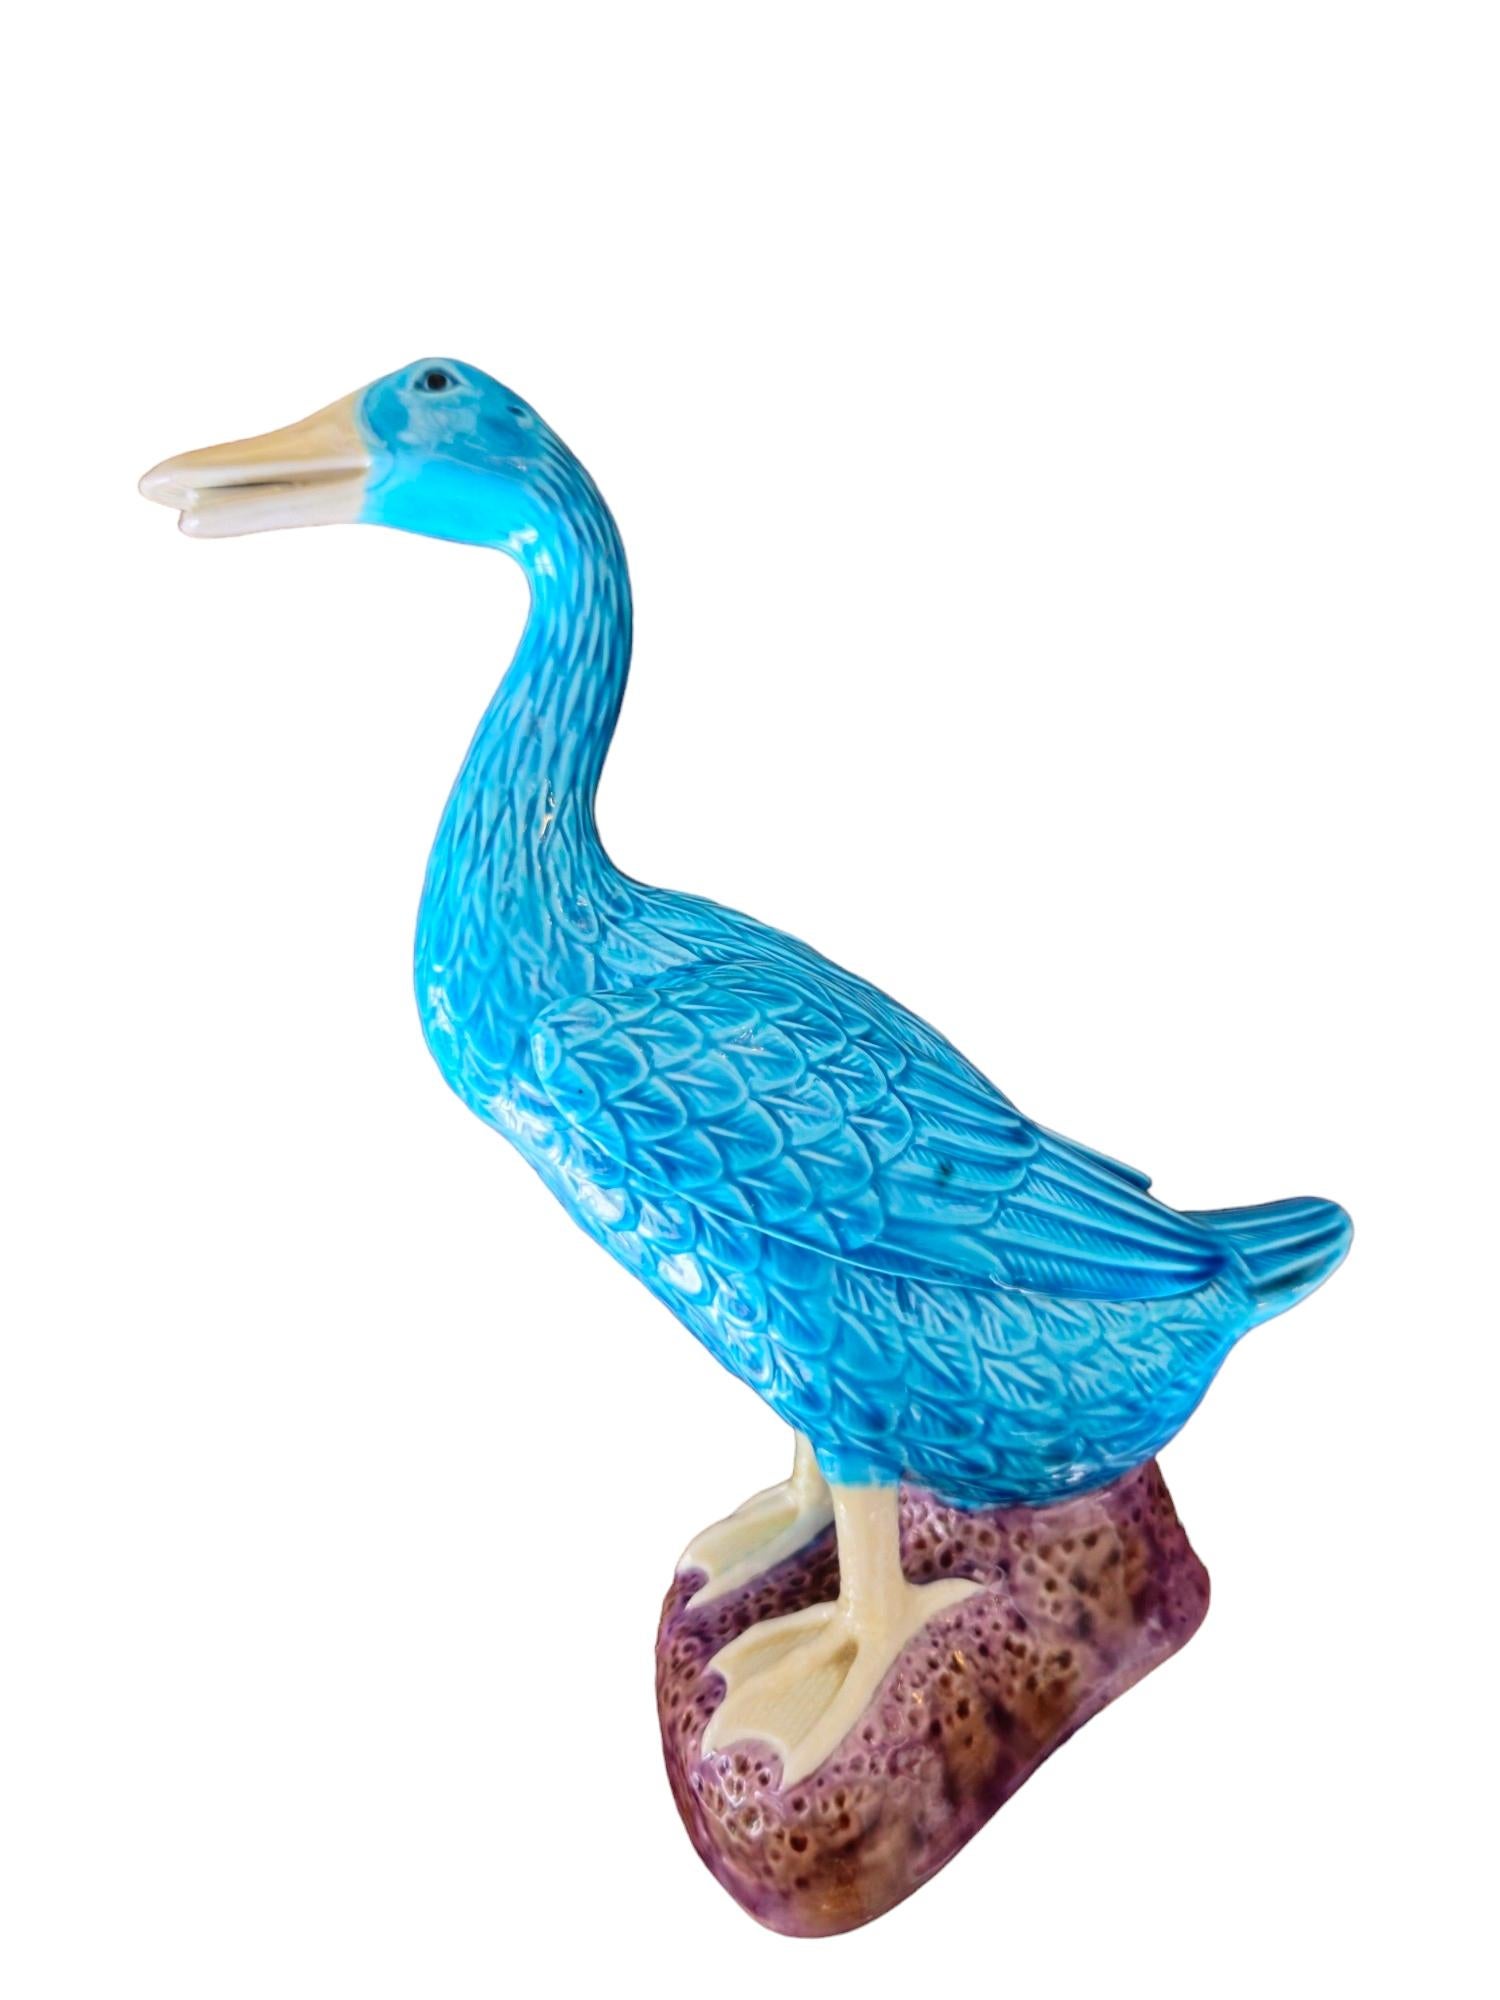 Siehe eine prächtige große glasierte keramische blaue Ente des frühen 20. Jahrhunderts mit einem königlichen lila Sockel. Dieses exquisite vogelkundliche Meisterwerk verkörpert die Eleganz vergangener Epochen und zeichnet sich durch sorgfältige